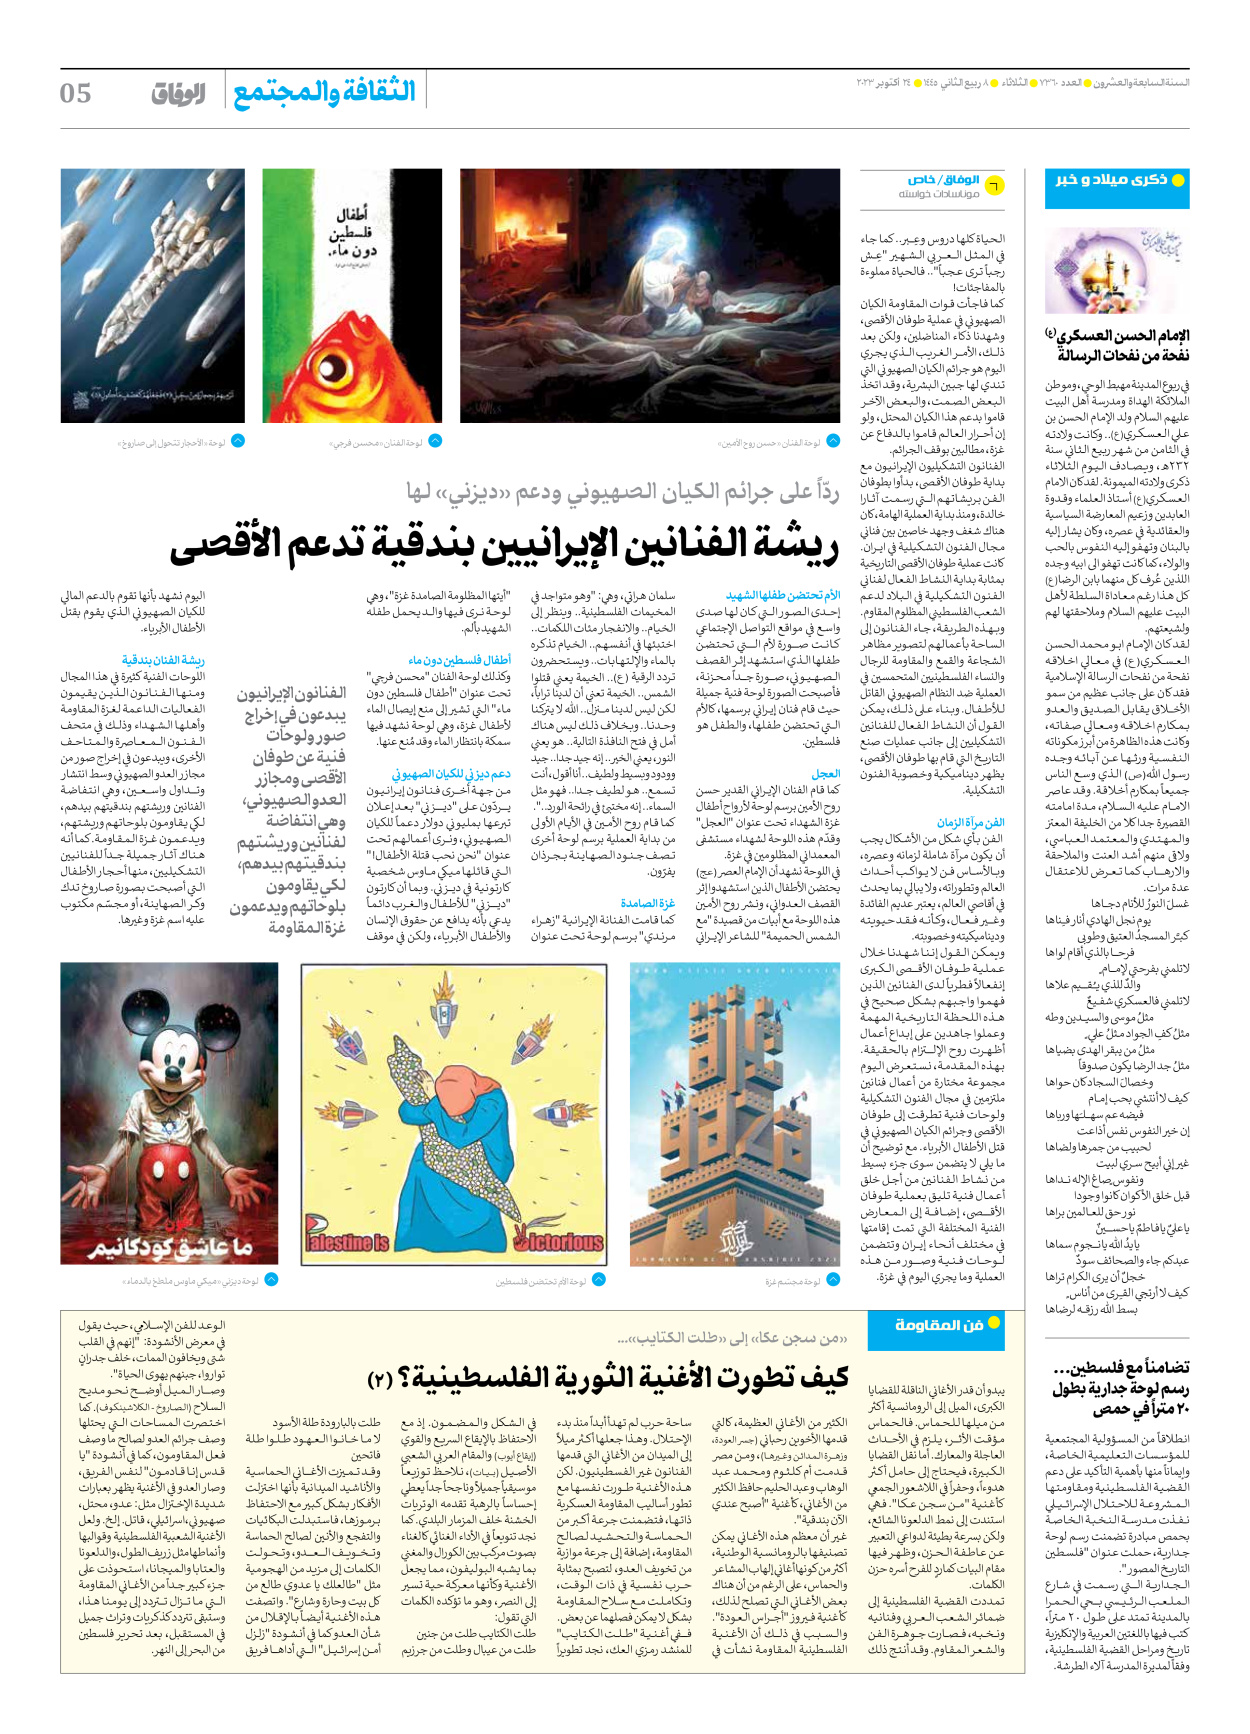 صحیفة ایران الدولیة الوفاق - العدد سبعة آلاف وثلاثمائة وستون - ٢٤ أكتوبر ٢٠٢٣ - الصفحة ٥